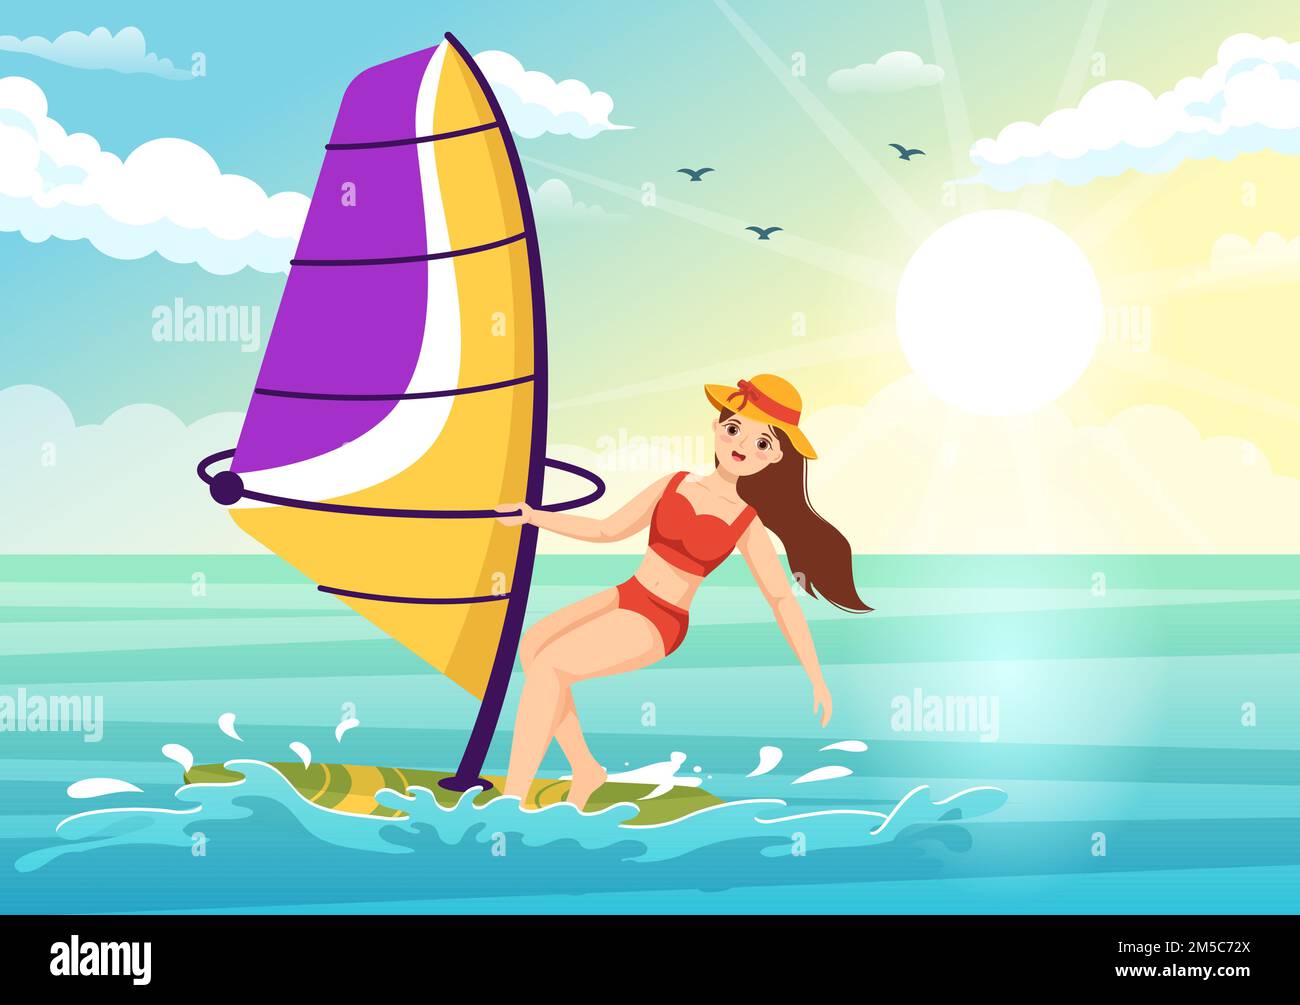 Windsurfen mit der Person, die auf dem Segelboot steht und die Segel hält, in extremen Wassersportarten flache Cartoon Handgemalte Vorlagen Illustration Stock Vektor